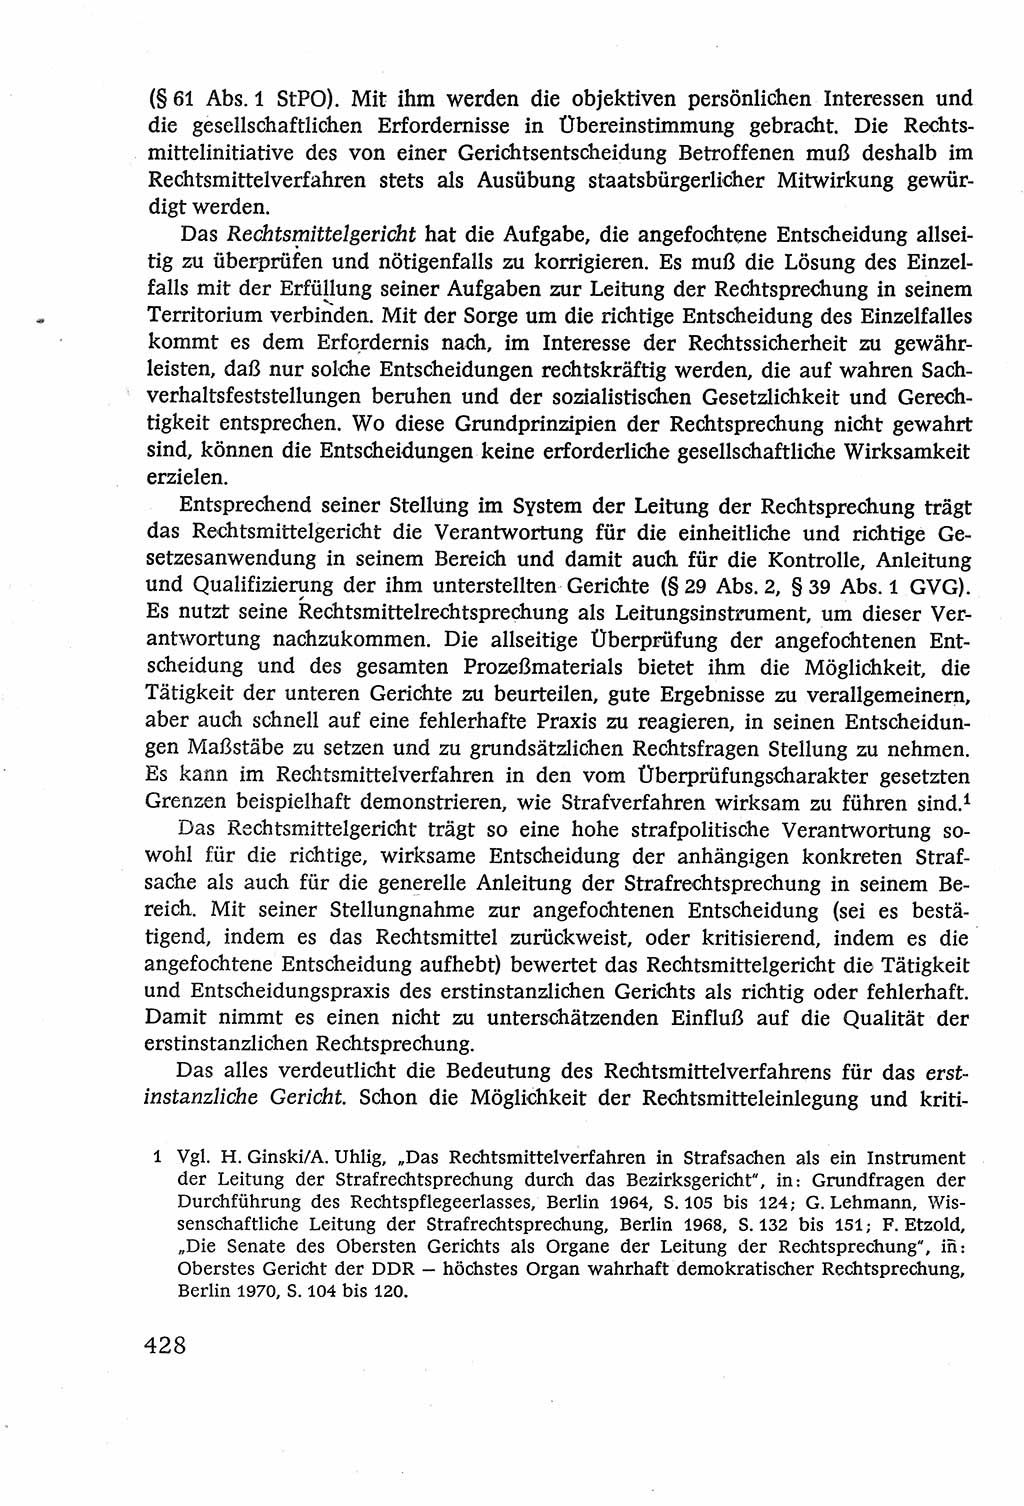 Strafverfahrensrecht [Deutsche Demokratische Republik (DDR)], Lehrbuch 1977, Seite 428 (Strafverf.-R. DDR Lb. 1977, S. 428)